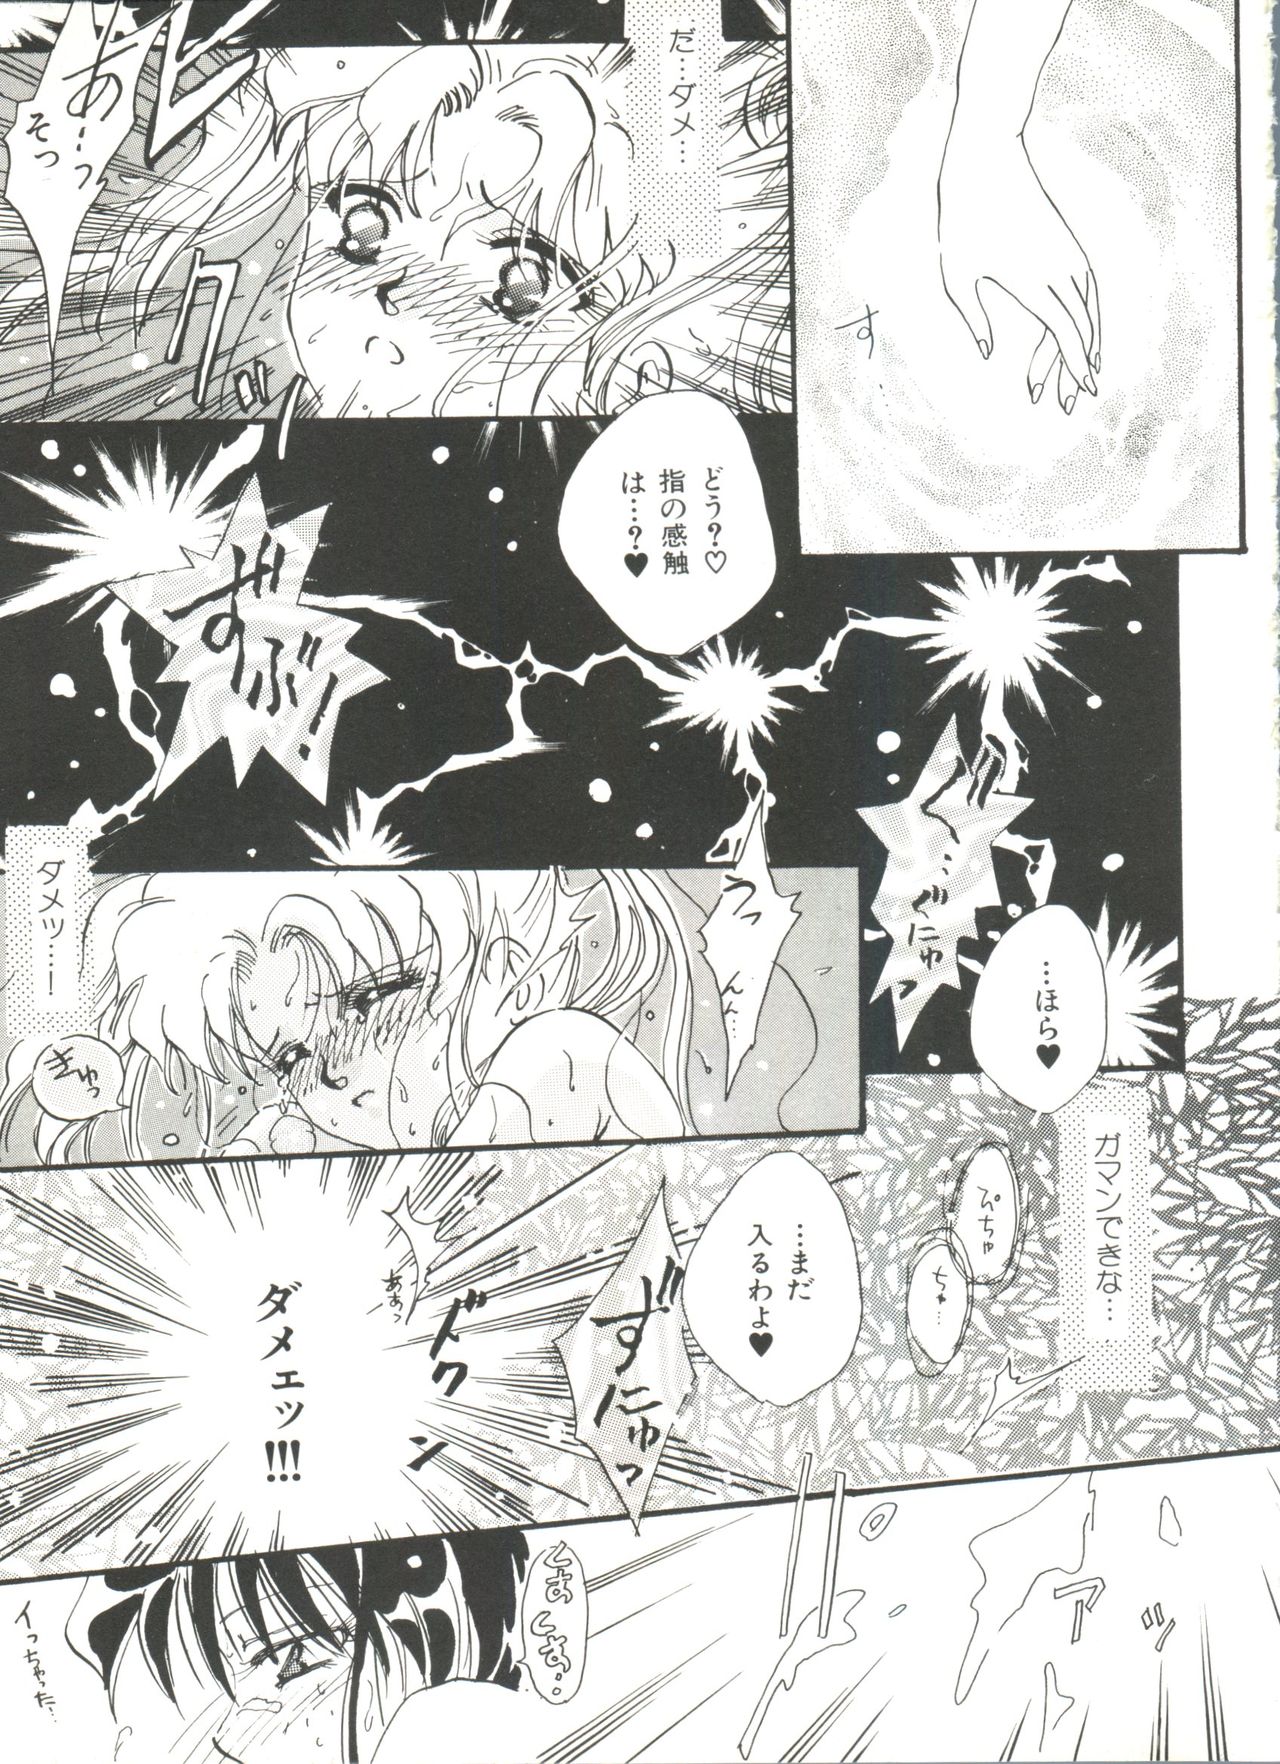 [Anthology] Bishoujo Doujinshi Anthology 18 - Moon Paradise 11 Tsuki no Rakuen (Bishoujo Senshi Sailor Moon) page 15 full